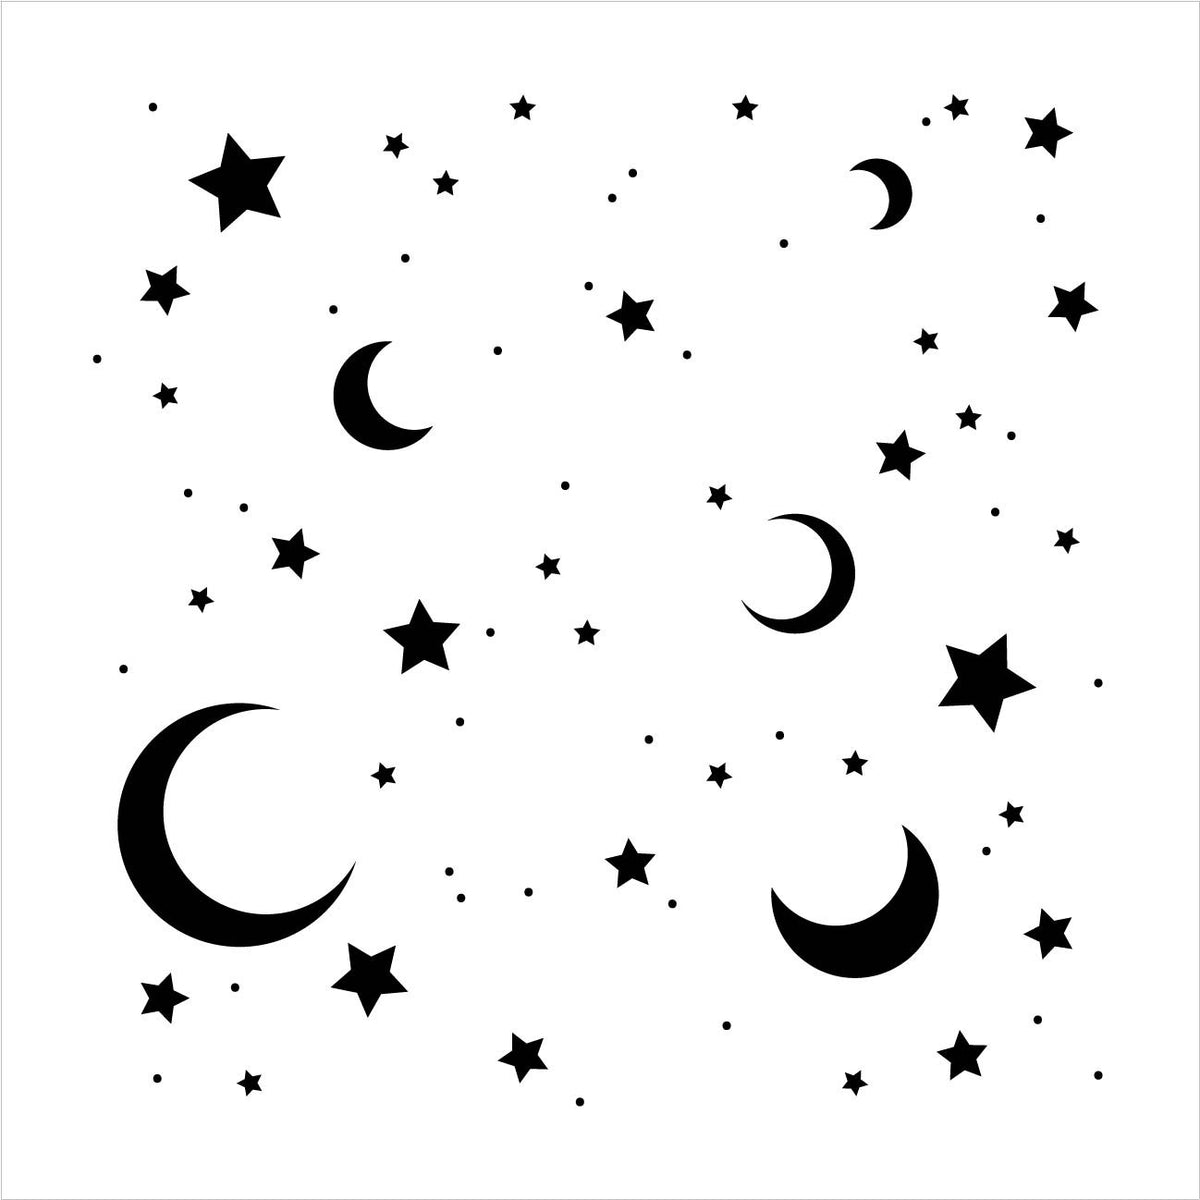 moon-stars-stencil-by-studior12-dreamy-night-sky-pattern-art-reu-studior12-stencils